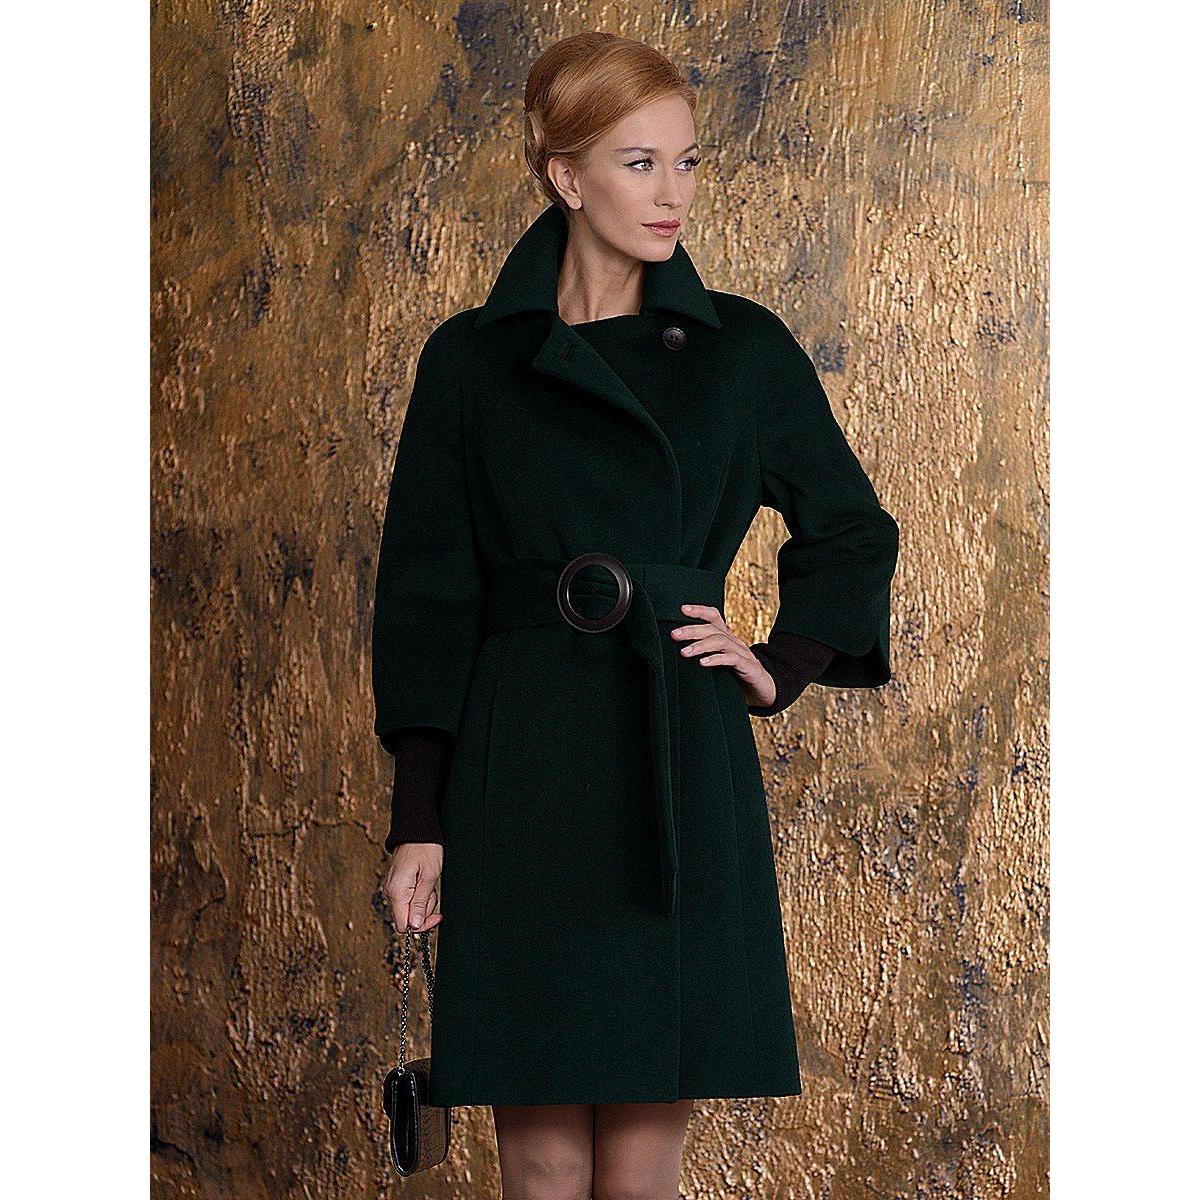 Пальто от производителя в спб. Пальто женское 2022 pompa. Pompa пальто. Пальто pompa темно зелёное. Пальто pompa пальто 2020.